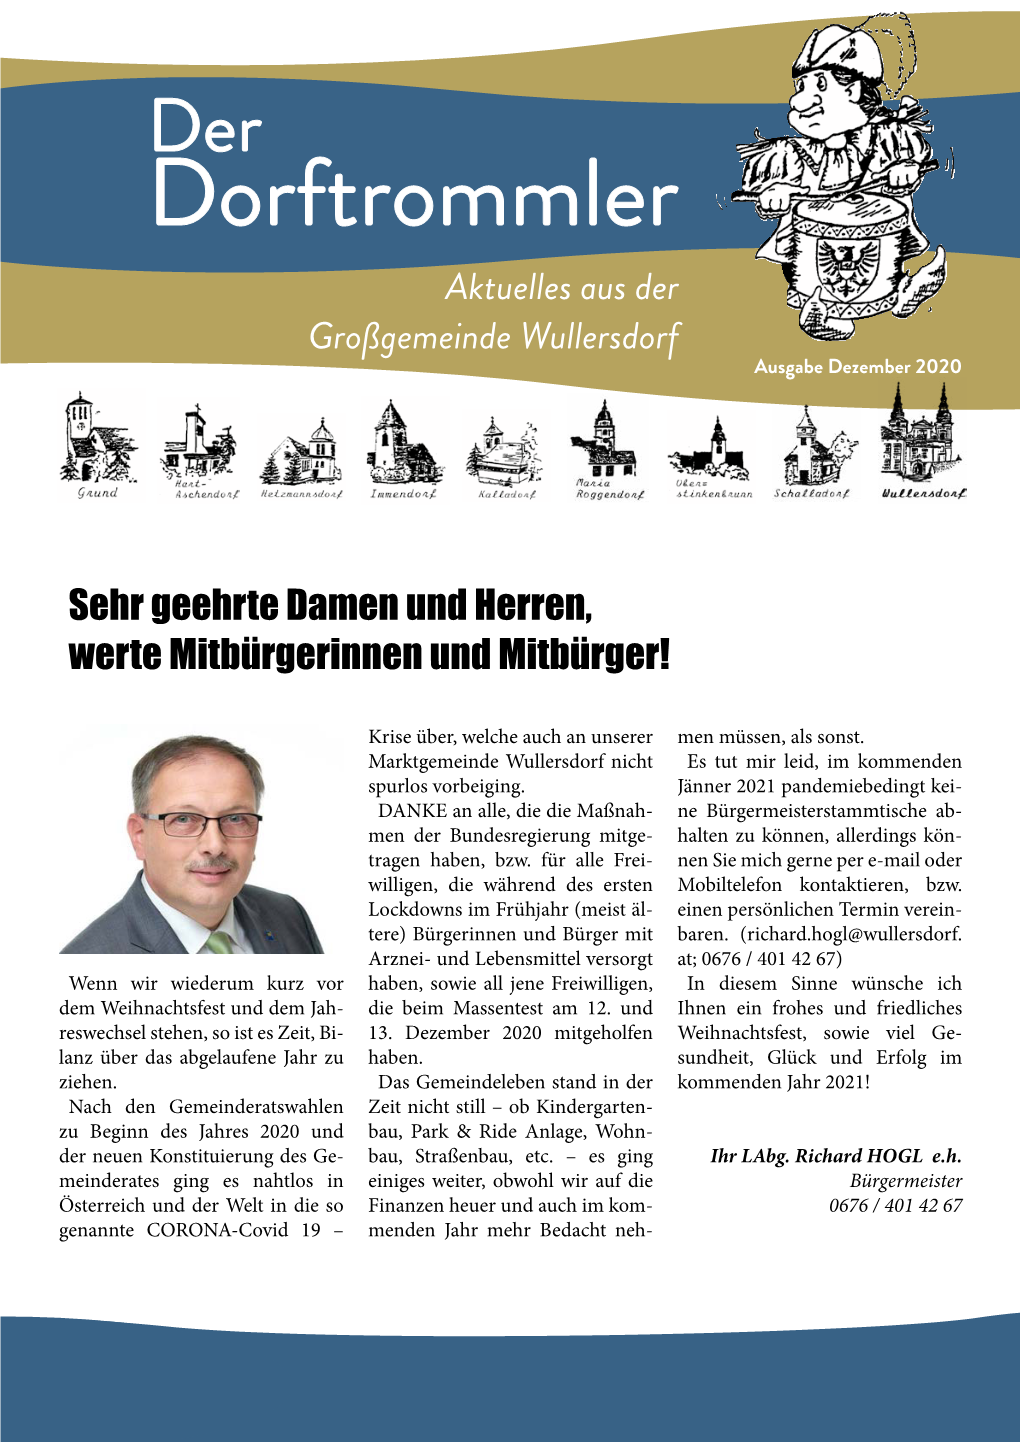 Dorftrommler Aktuelles Aus Der Großgemeinde Wullersdorf Ausgabe Dezember 2020